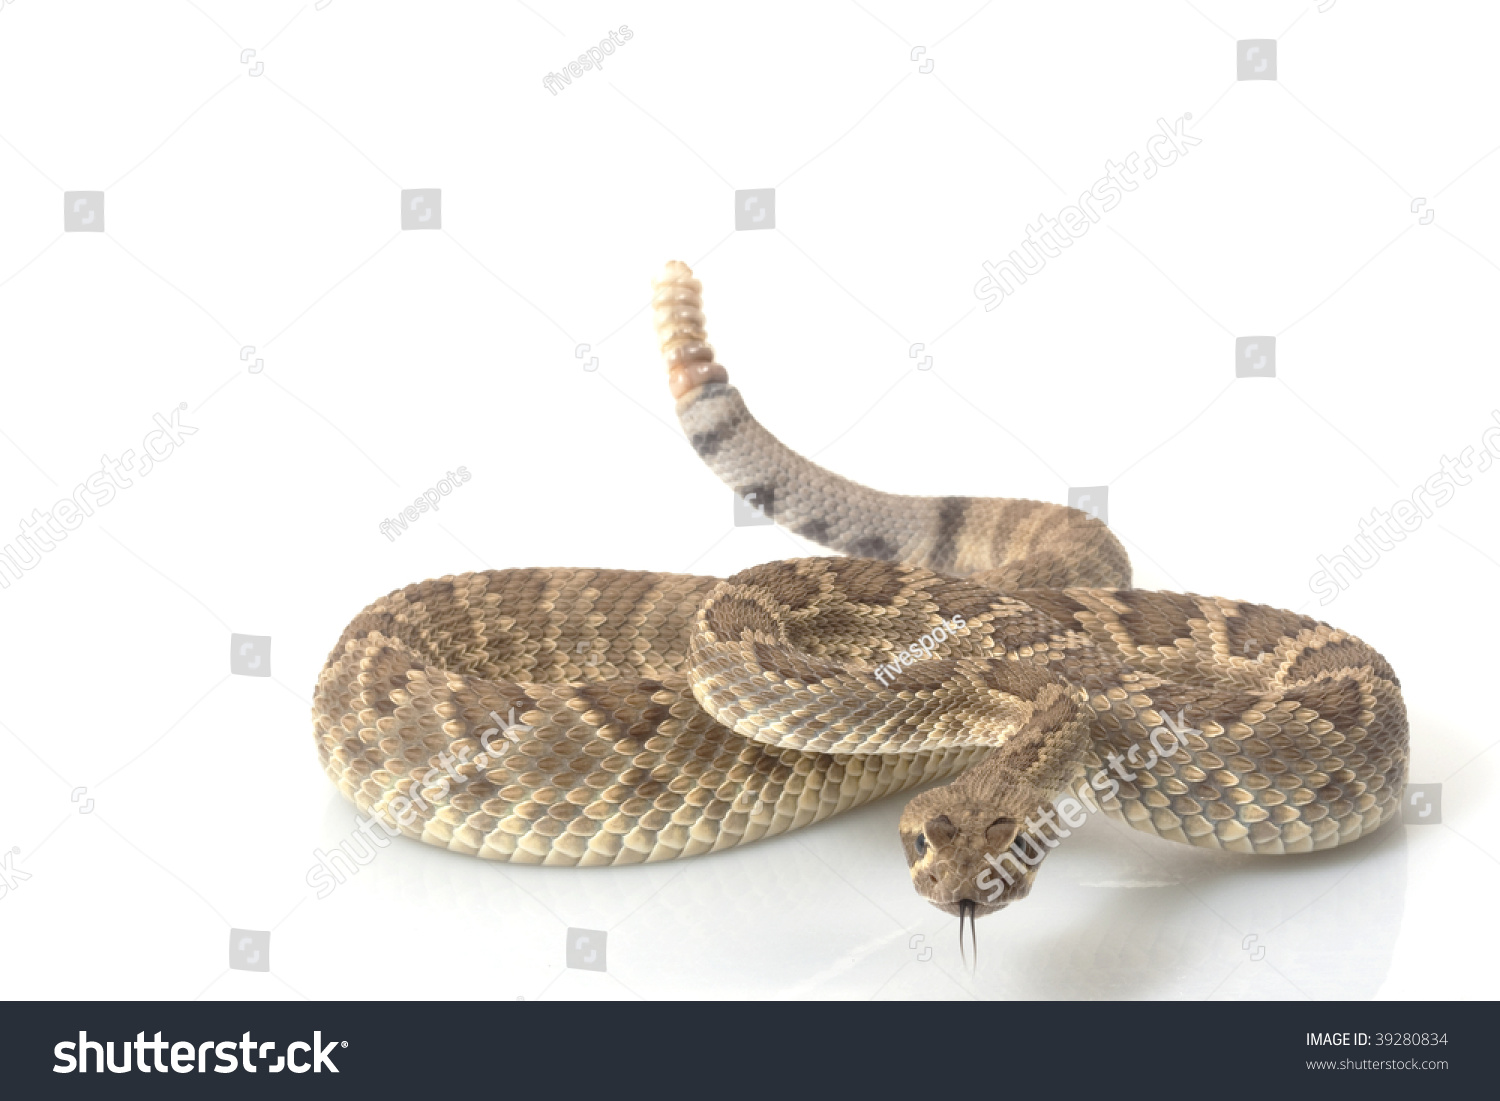 Dwarf Mojave rattlesnake (Crotalus scutulatus) isolated on white background #39280834